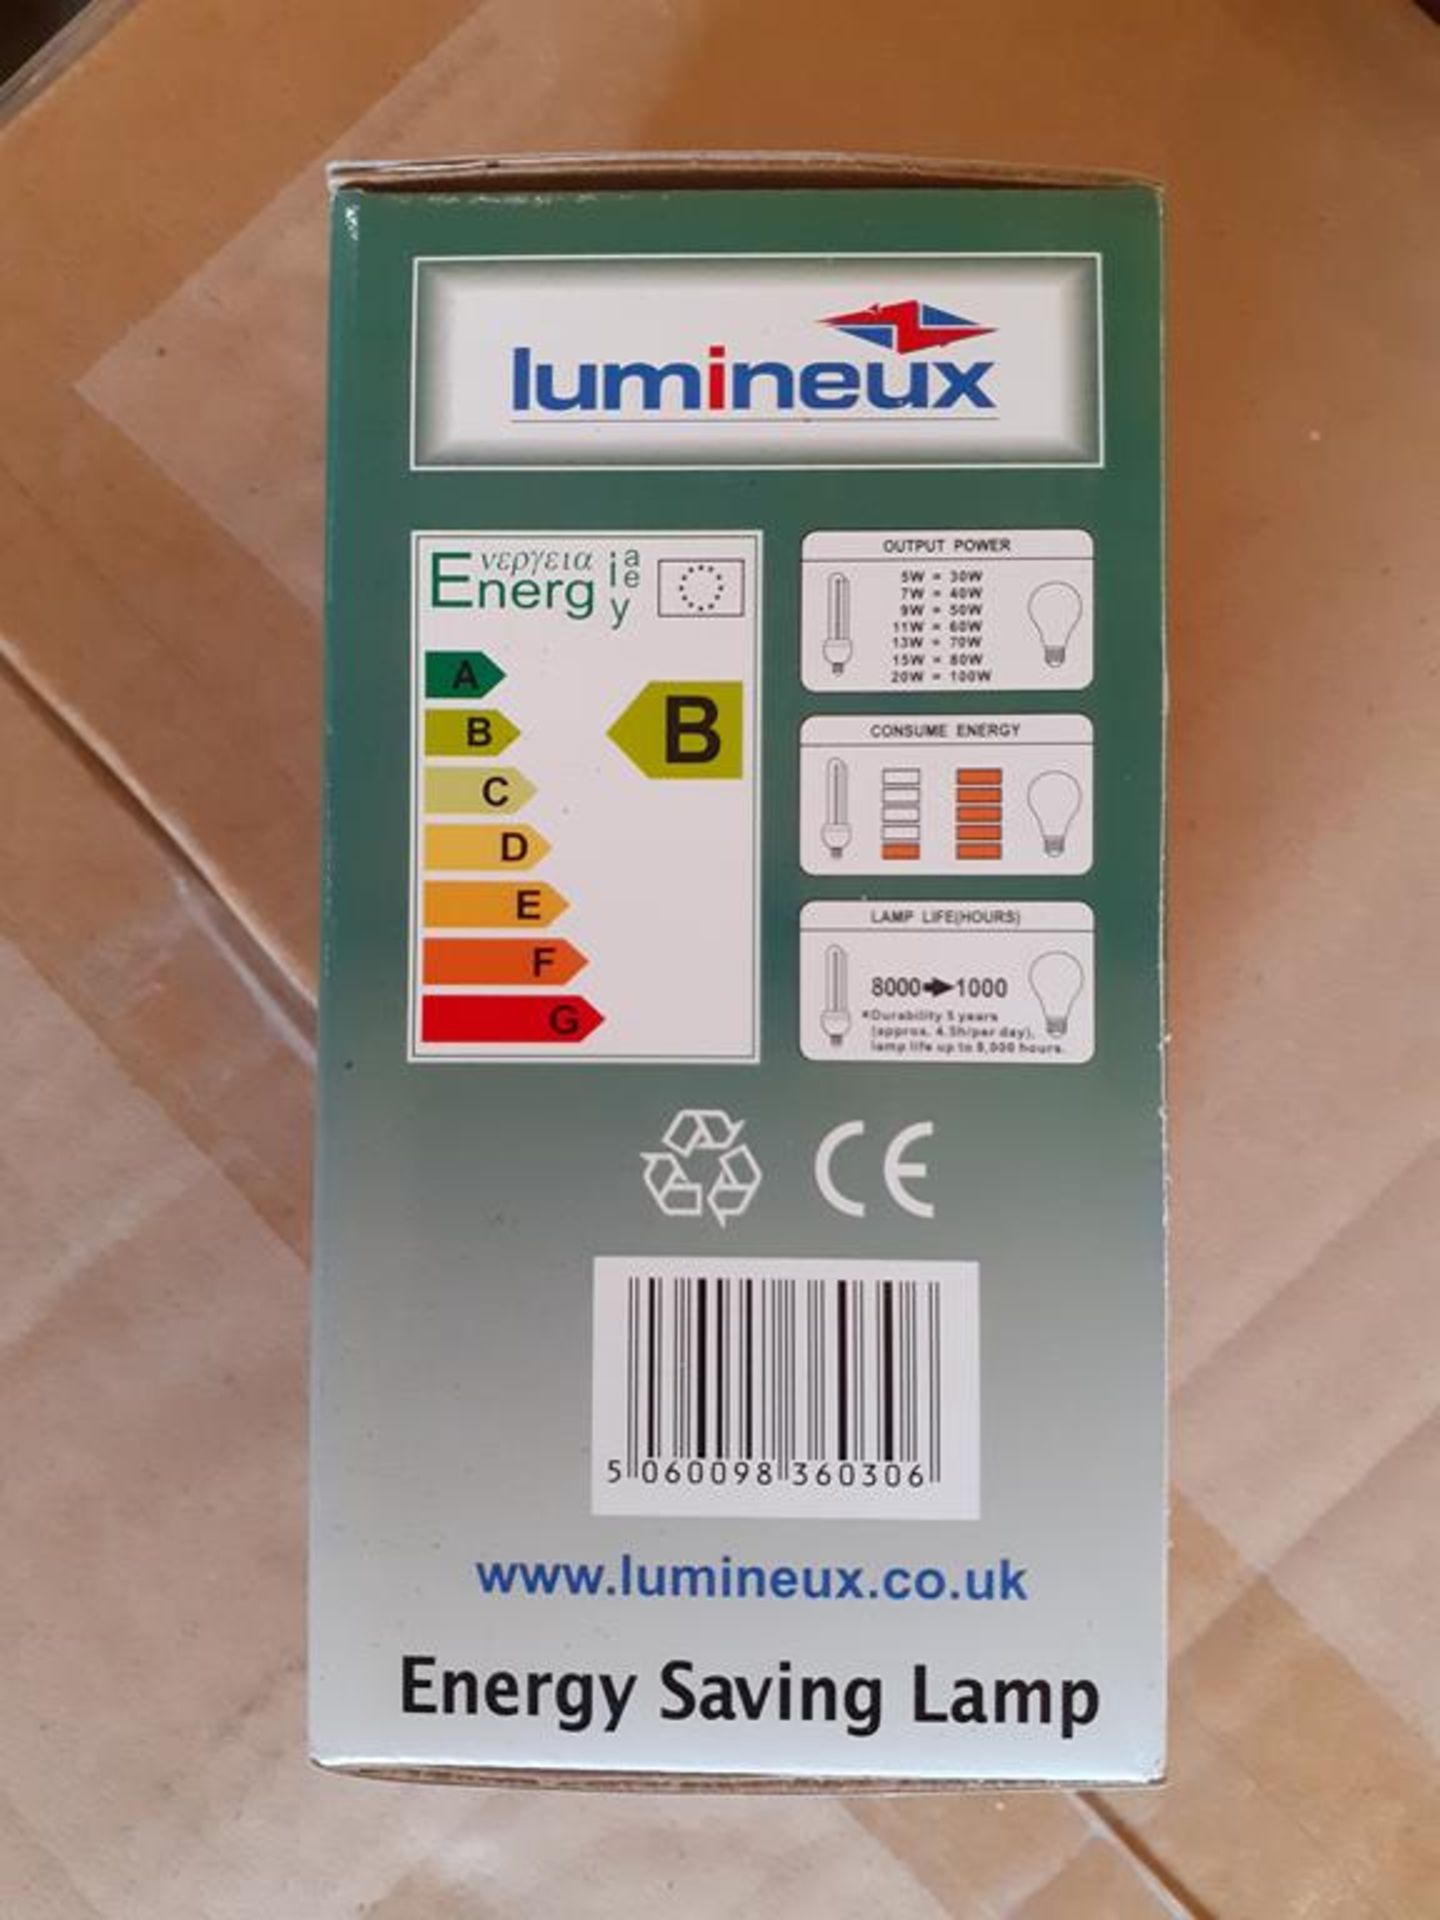 5x boxes of Lumineux Globe 9W E27 2700K 220-240V Engery Saving Bulbs (50pcs per box) - Image 4 of 4